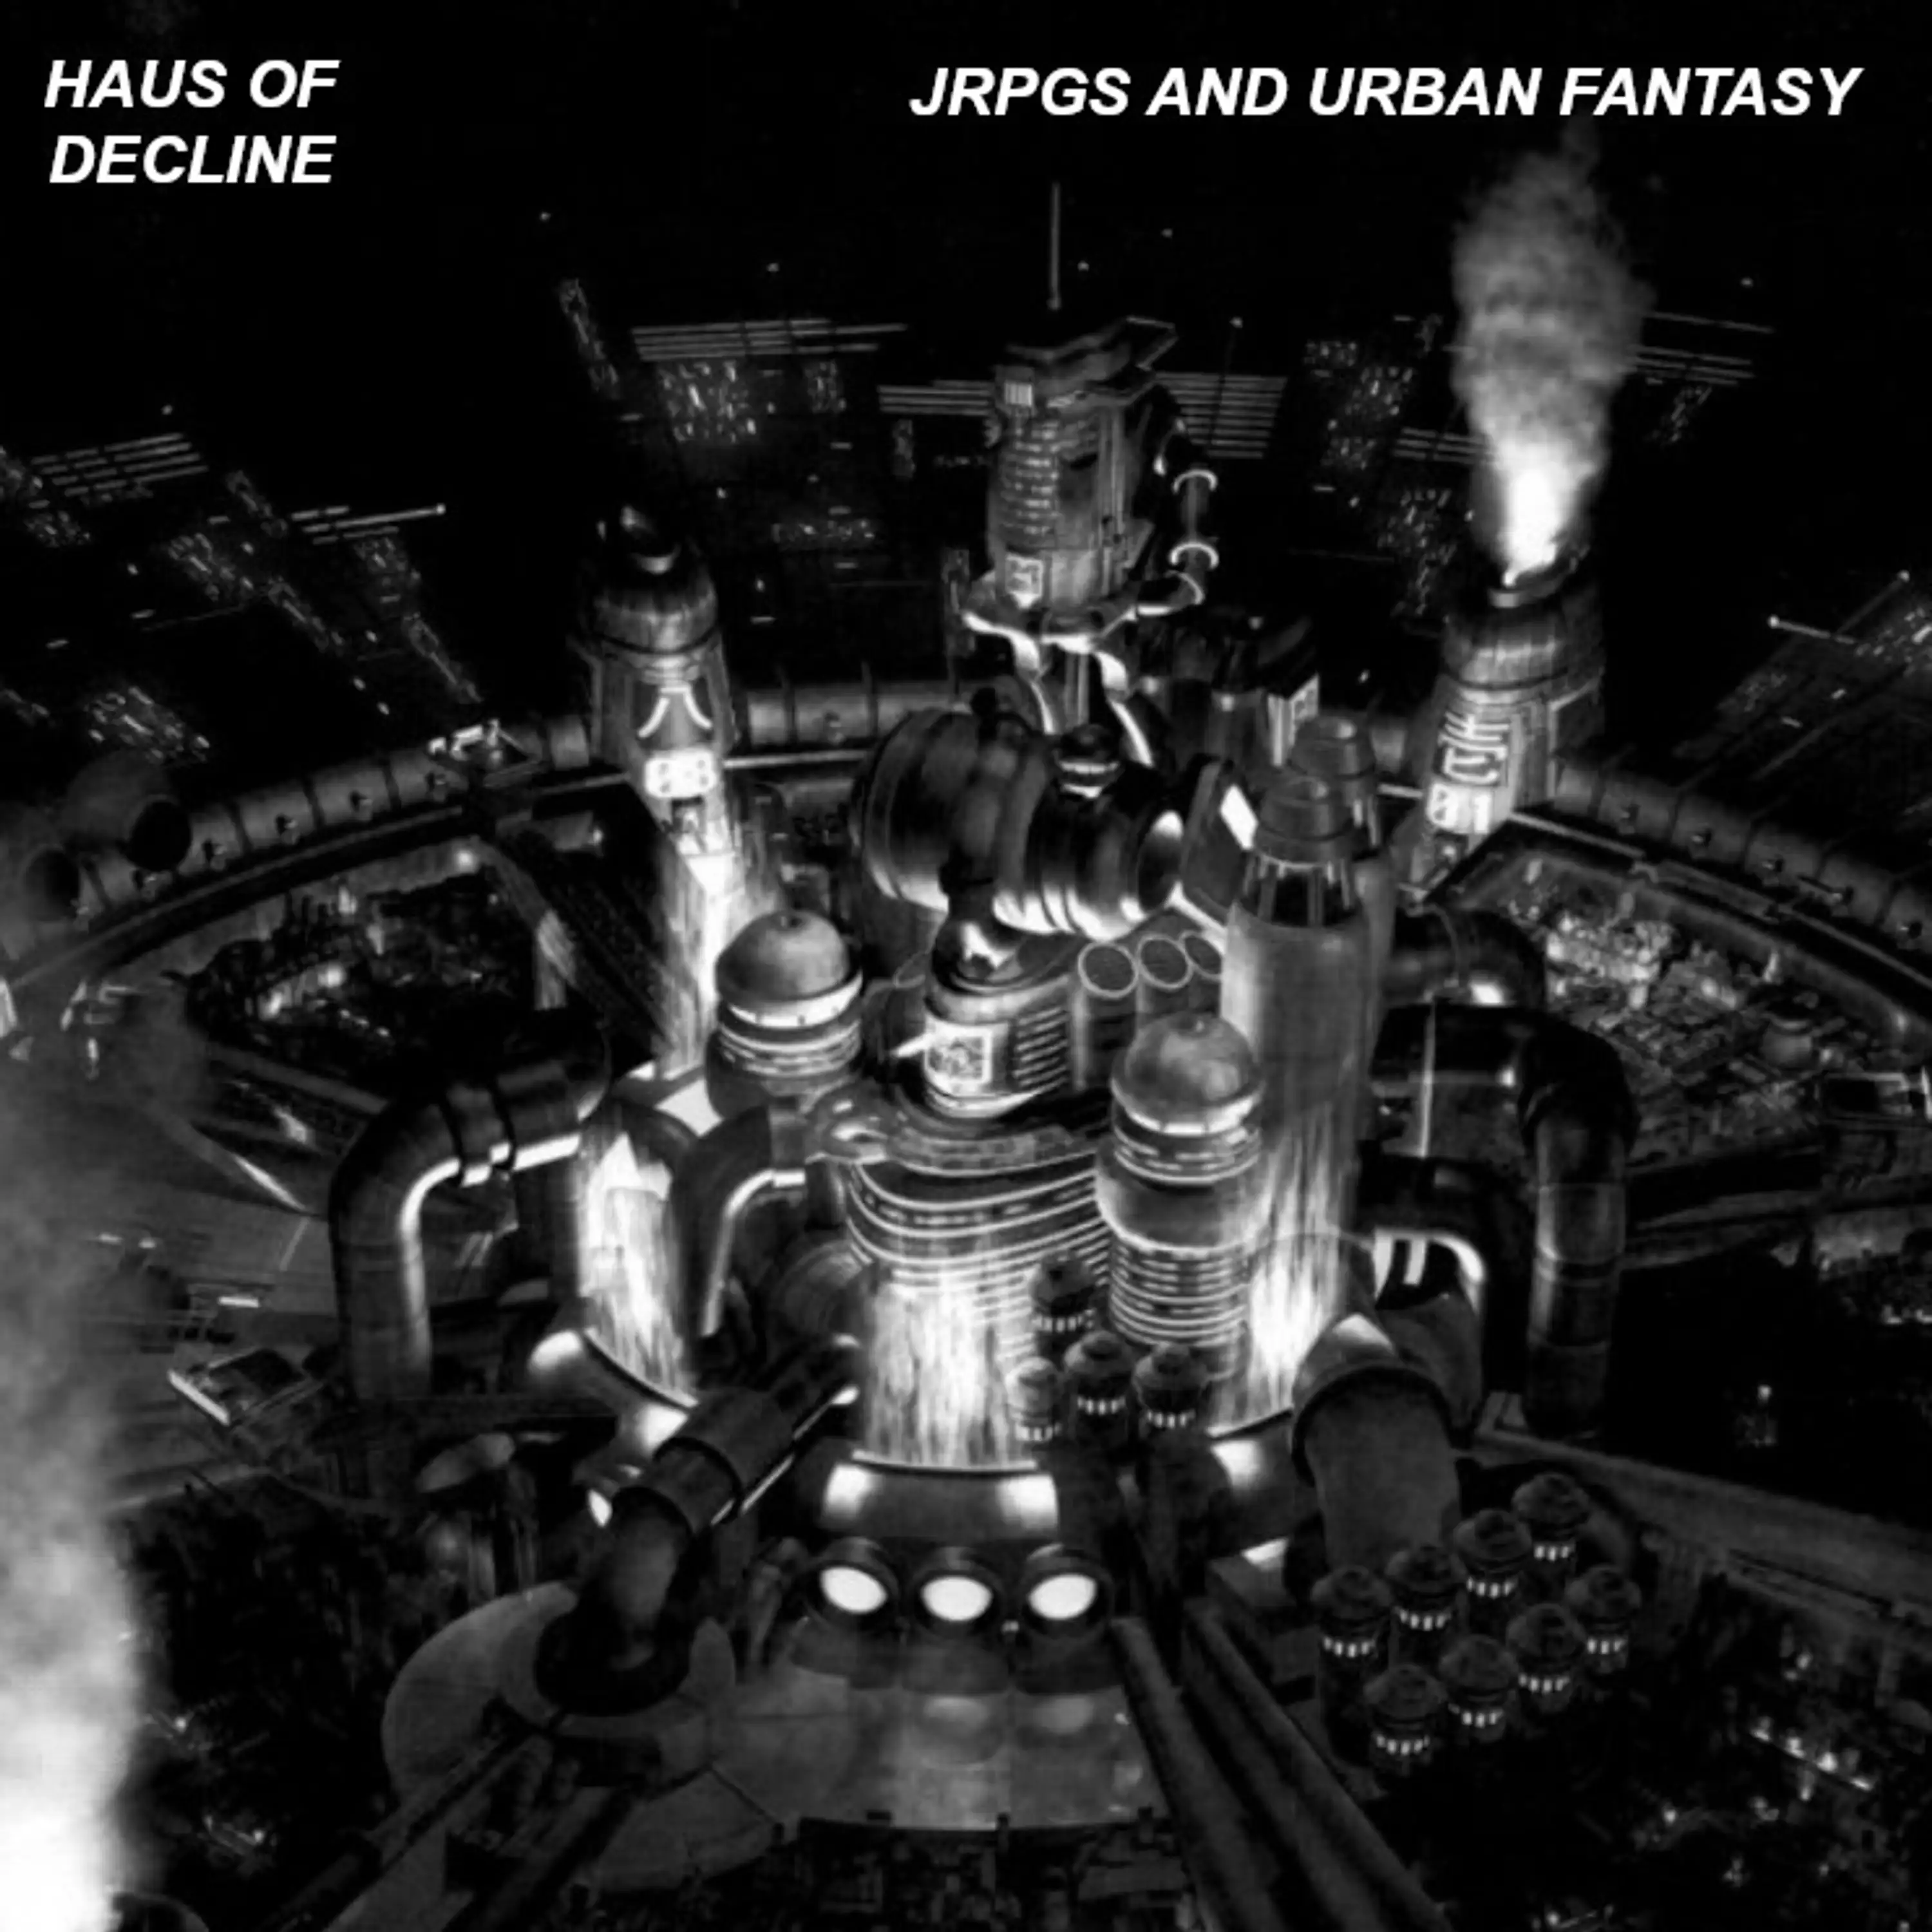 JRPGs and Urban Fantasy